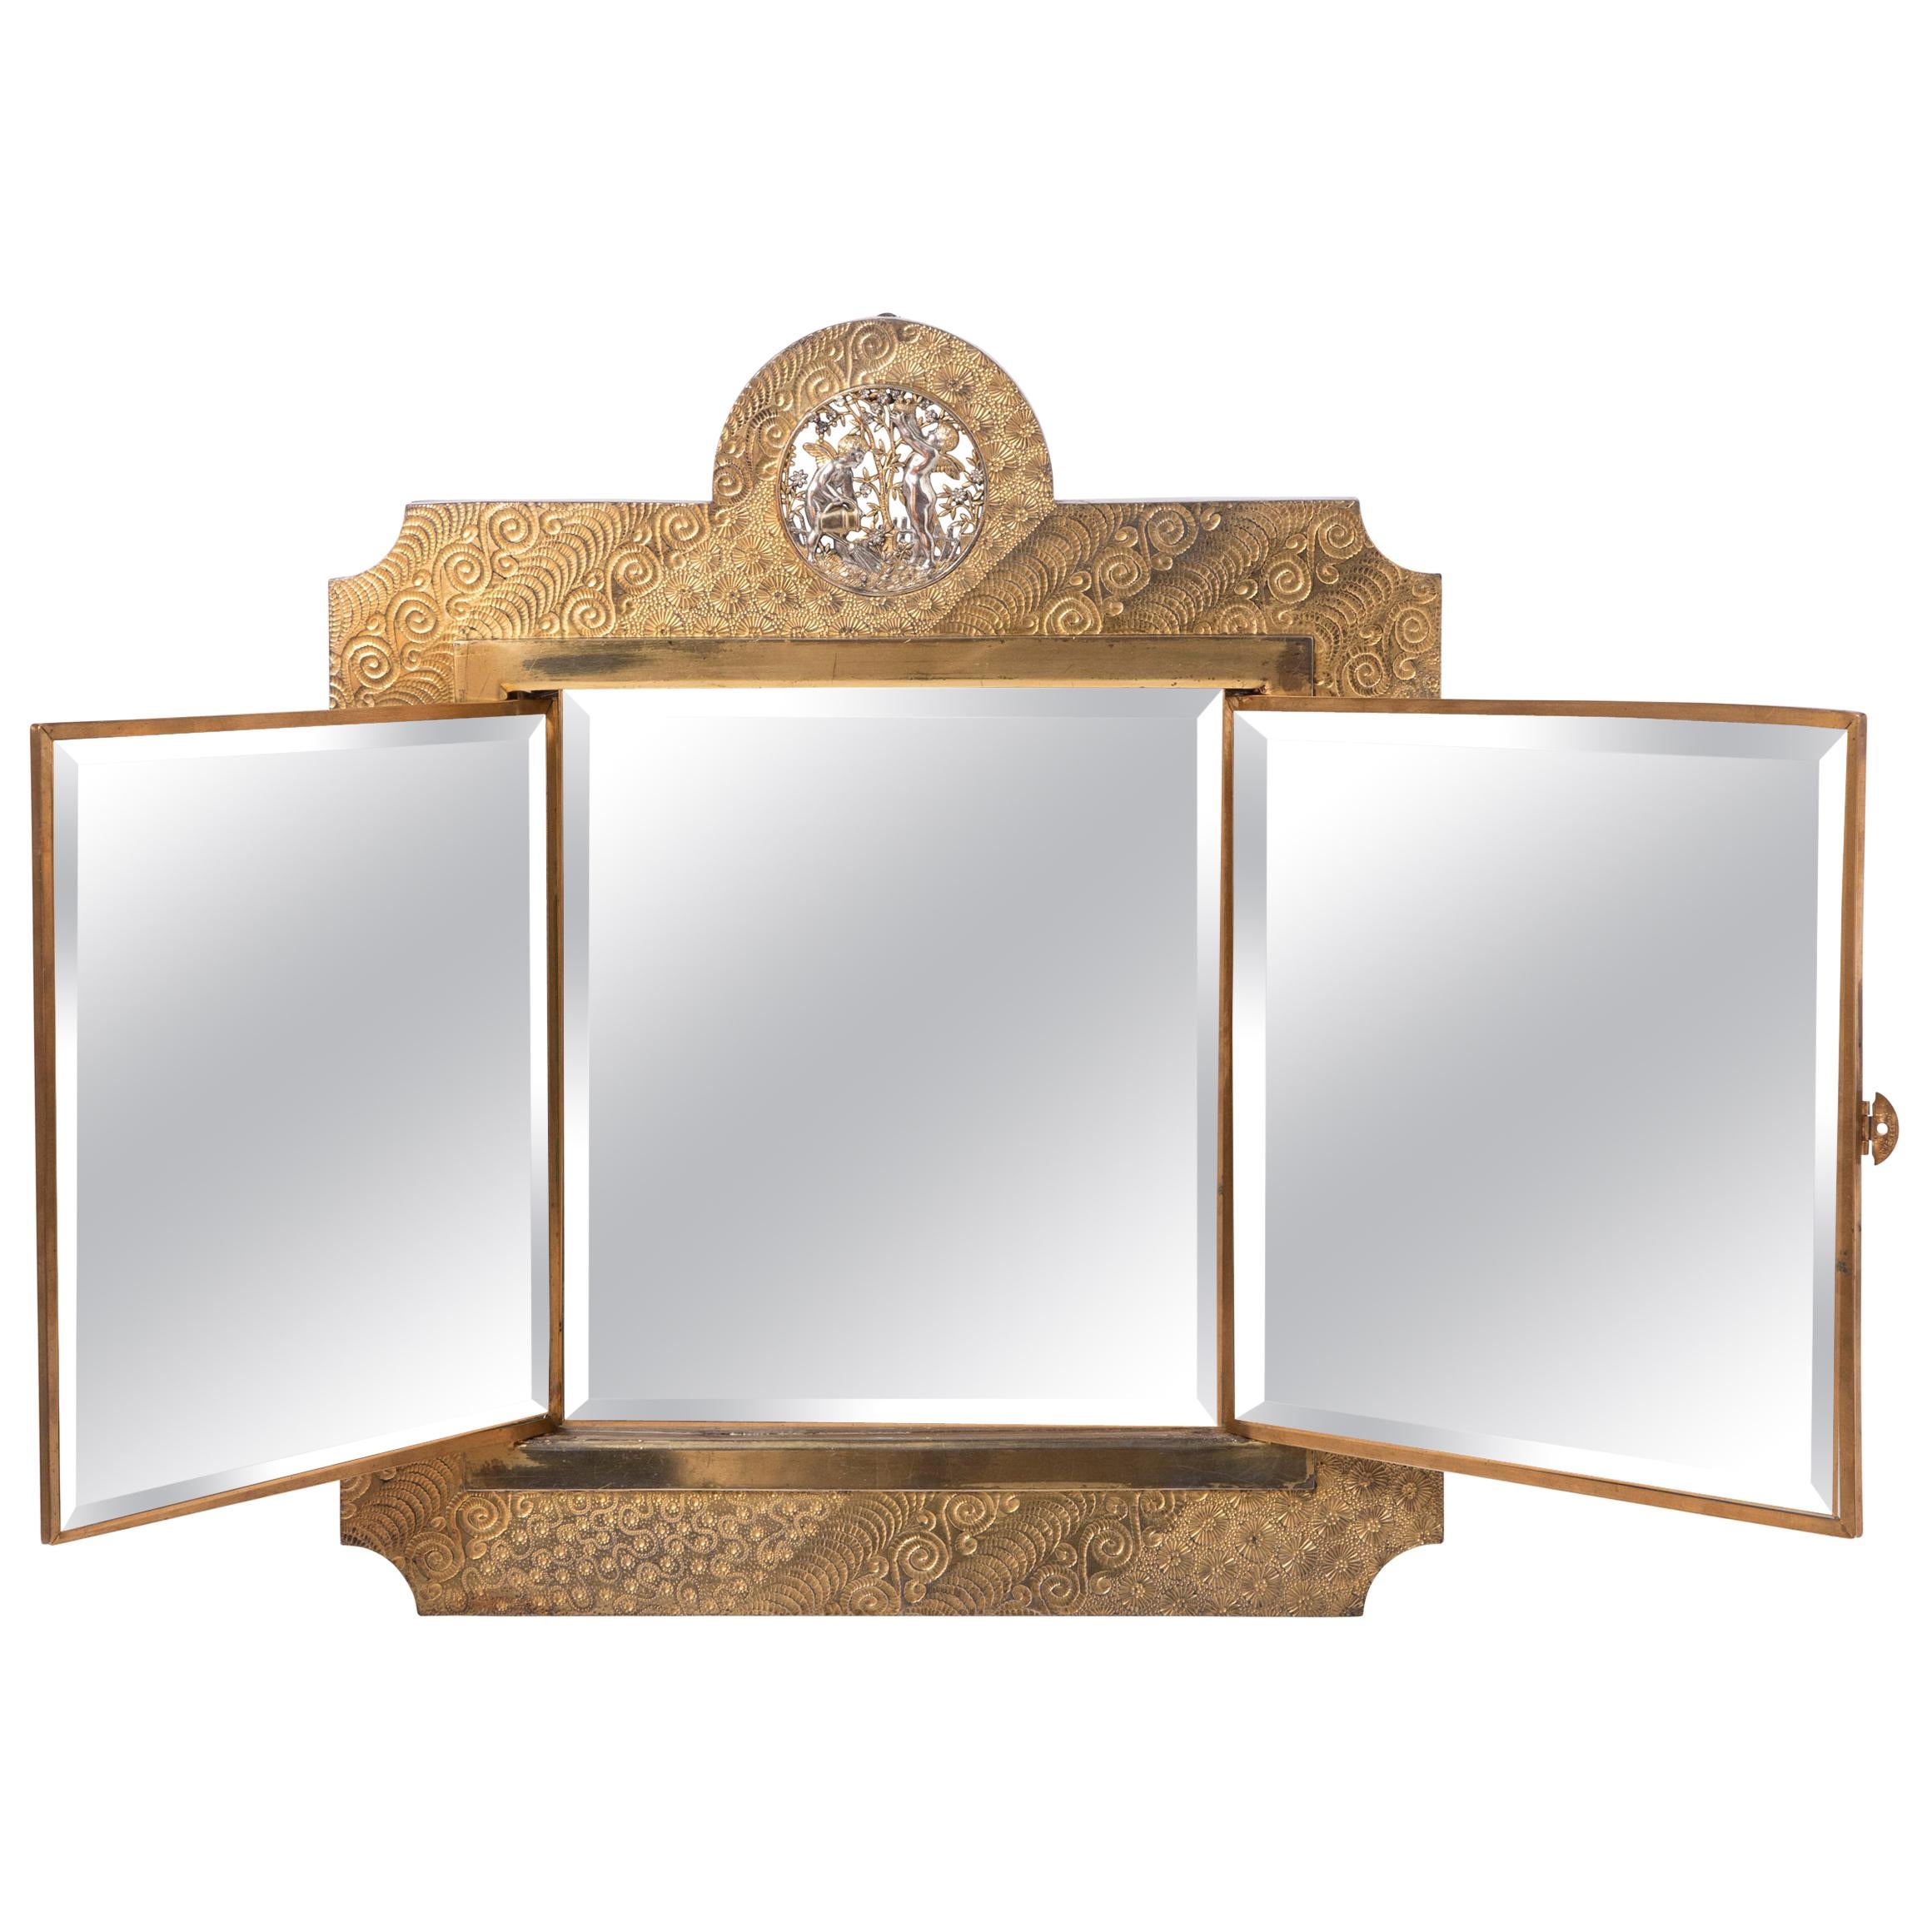 Gilt ans Silver Easel Mirror by The Meriden Britannia Company, USA circa 1876